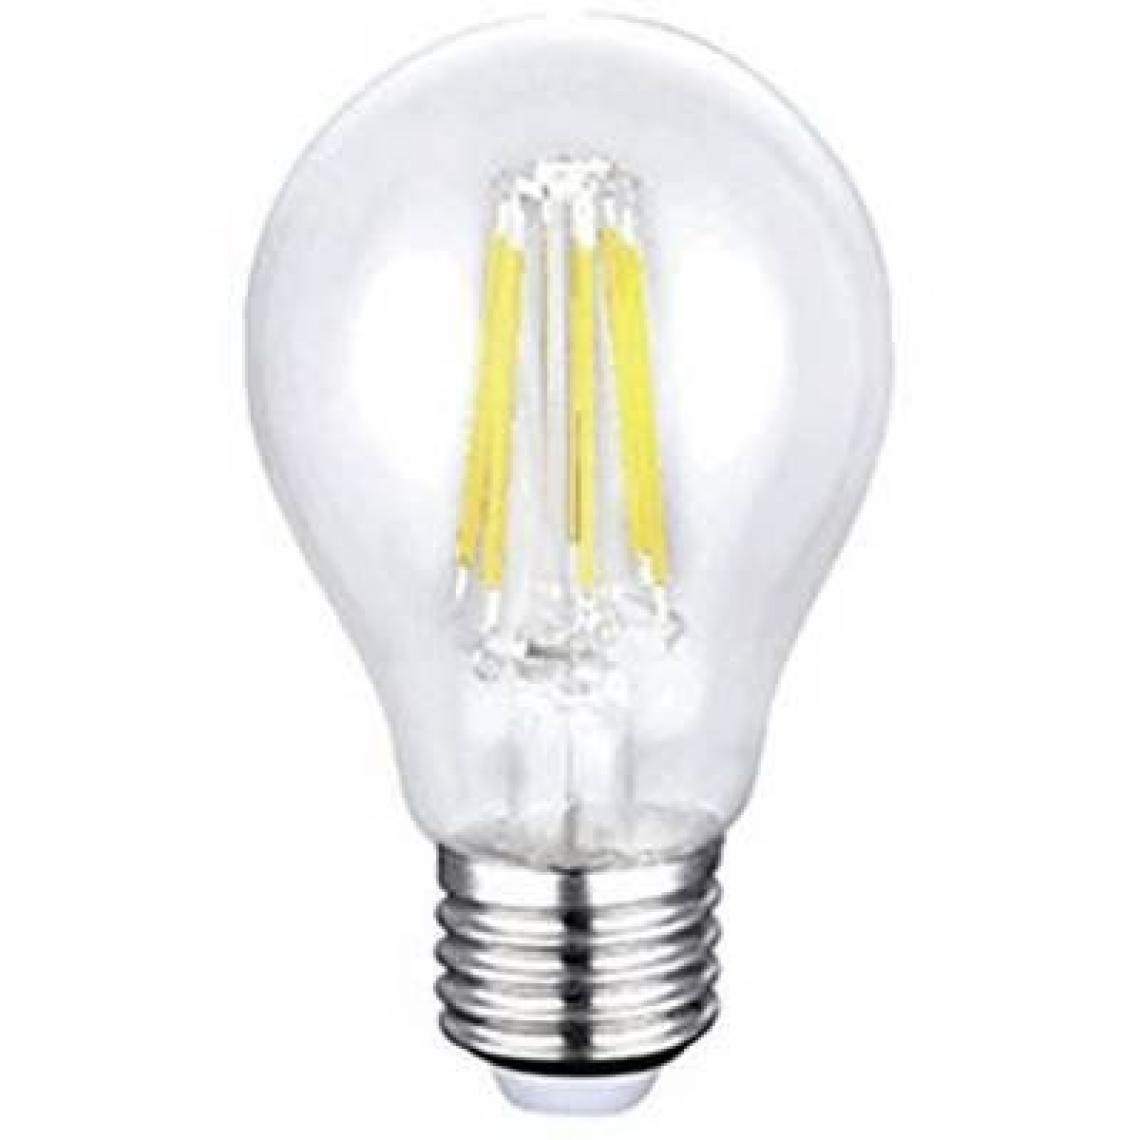 Inconnu - Ampoule LED E27 Sygonix SPC6D-E27-A60C-T-1WW-AC220V forme standard 6 W = 60 W blanc chaud (Ø x L) 60 mm x 106 mm EEC: cl - Ampoules LED